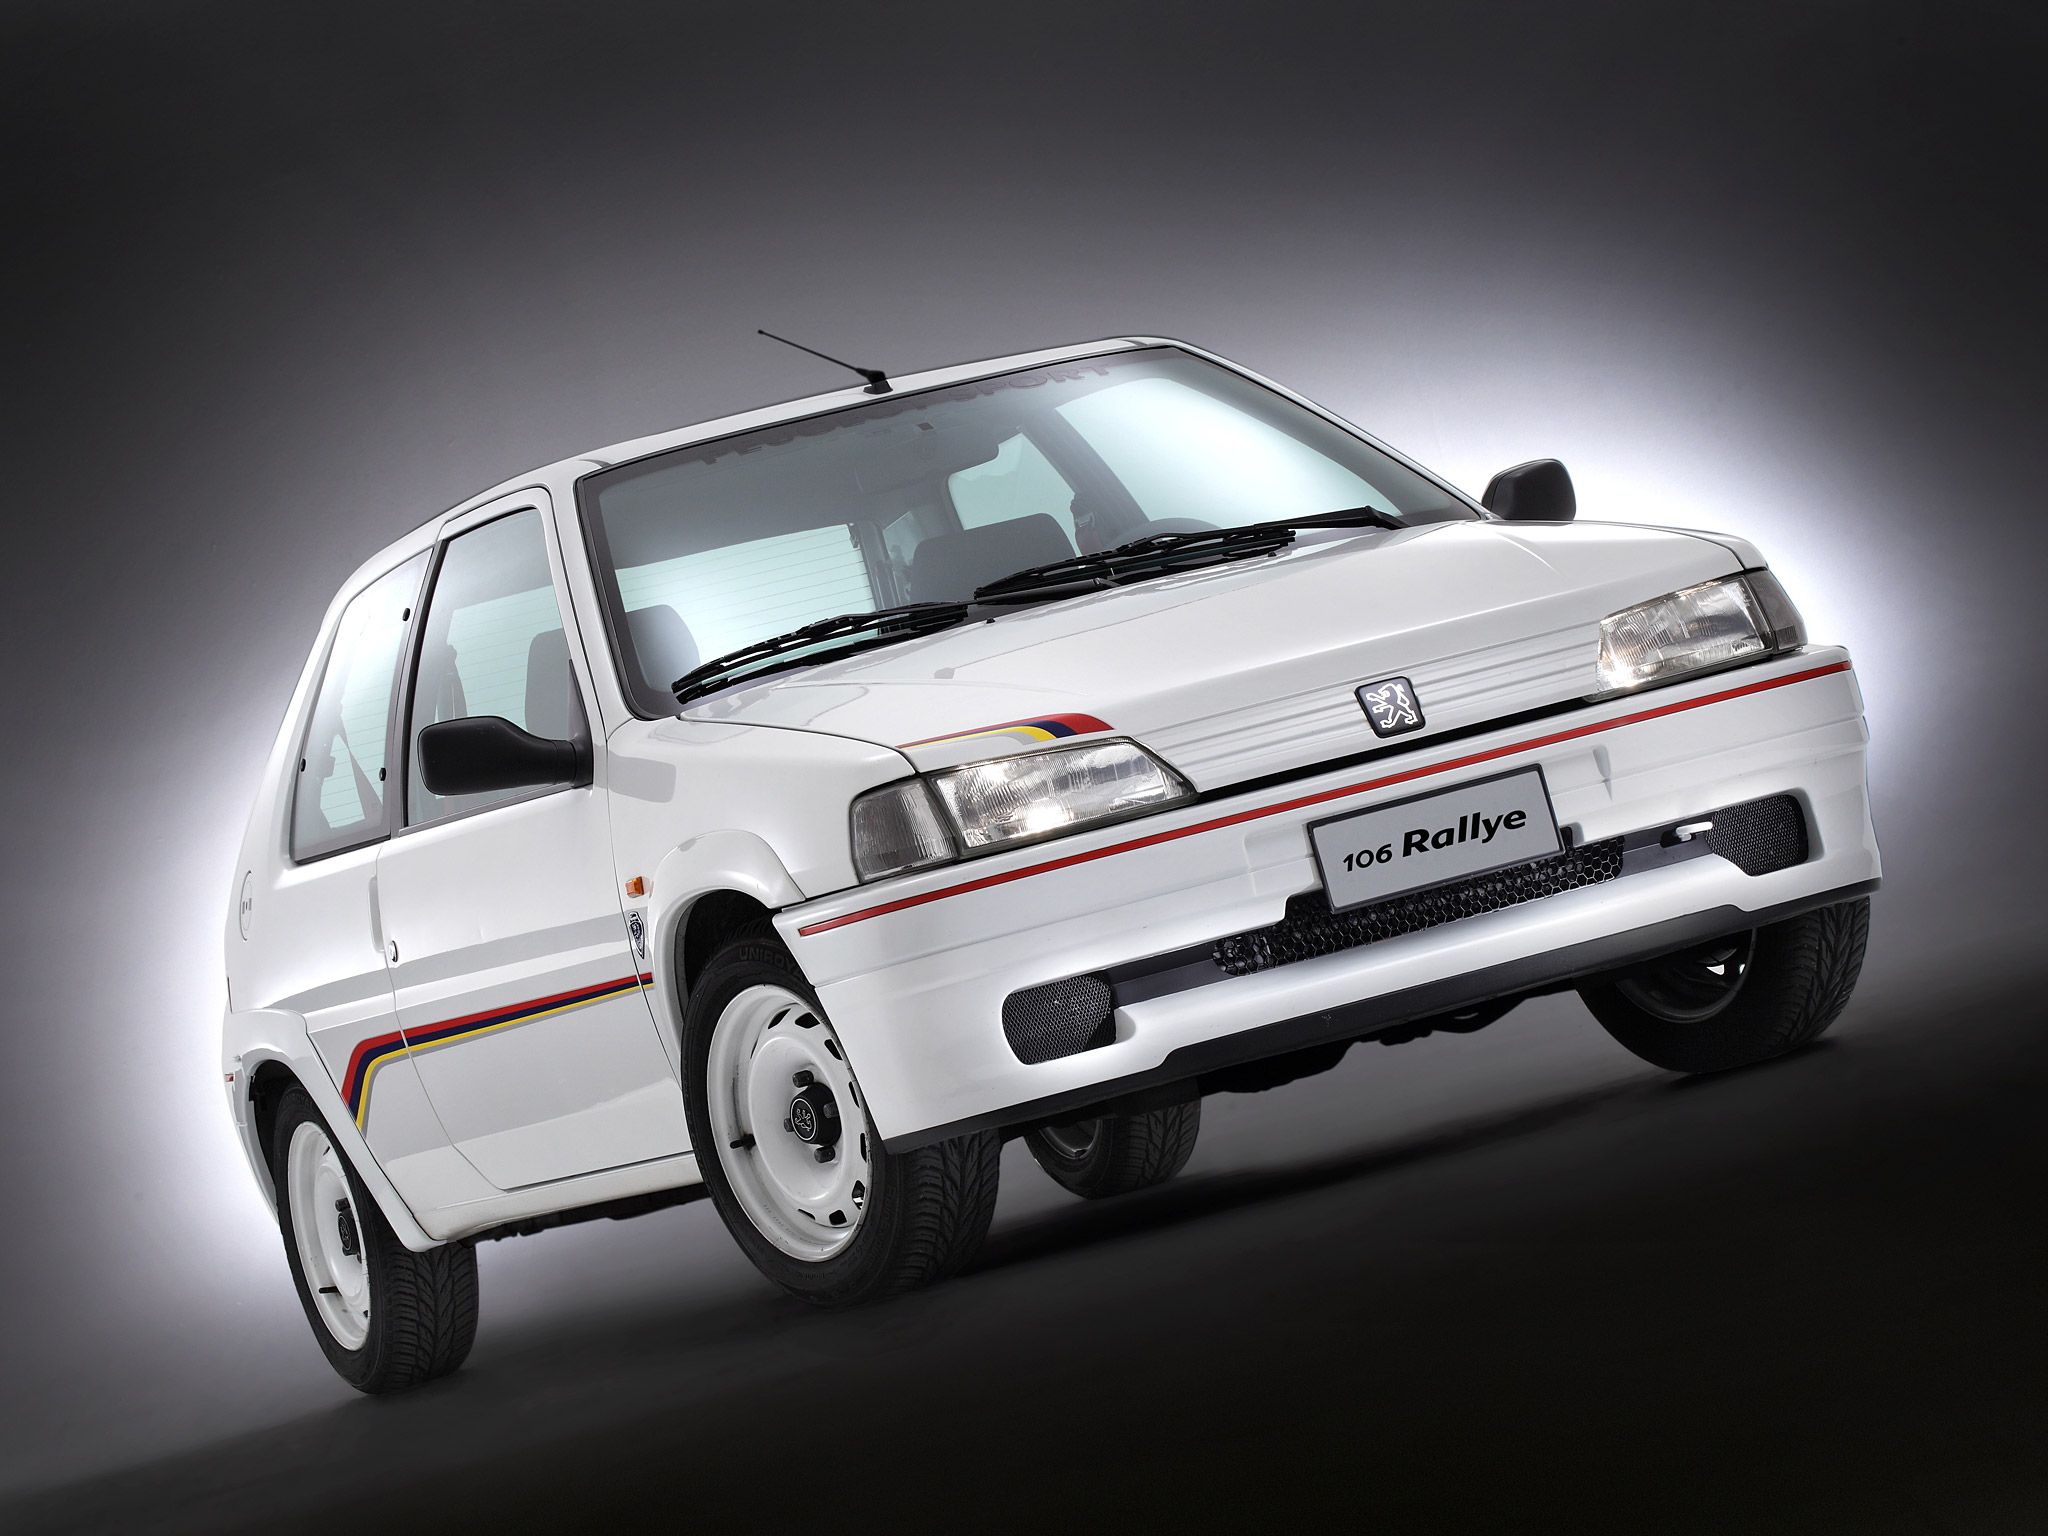 1994-Peugeot-106-Rallye-001-1536